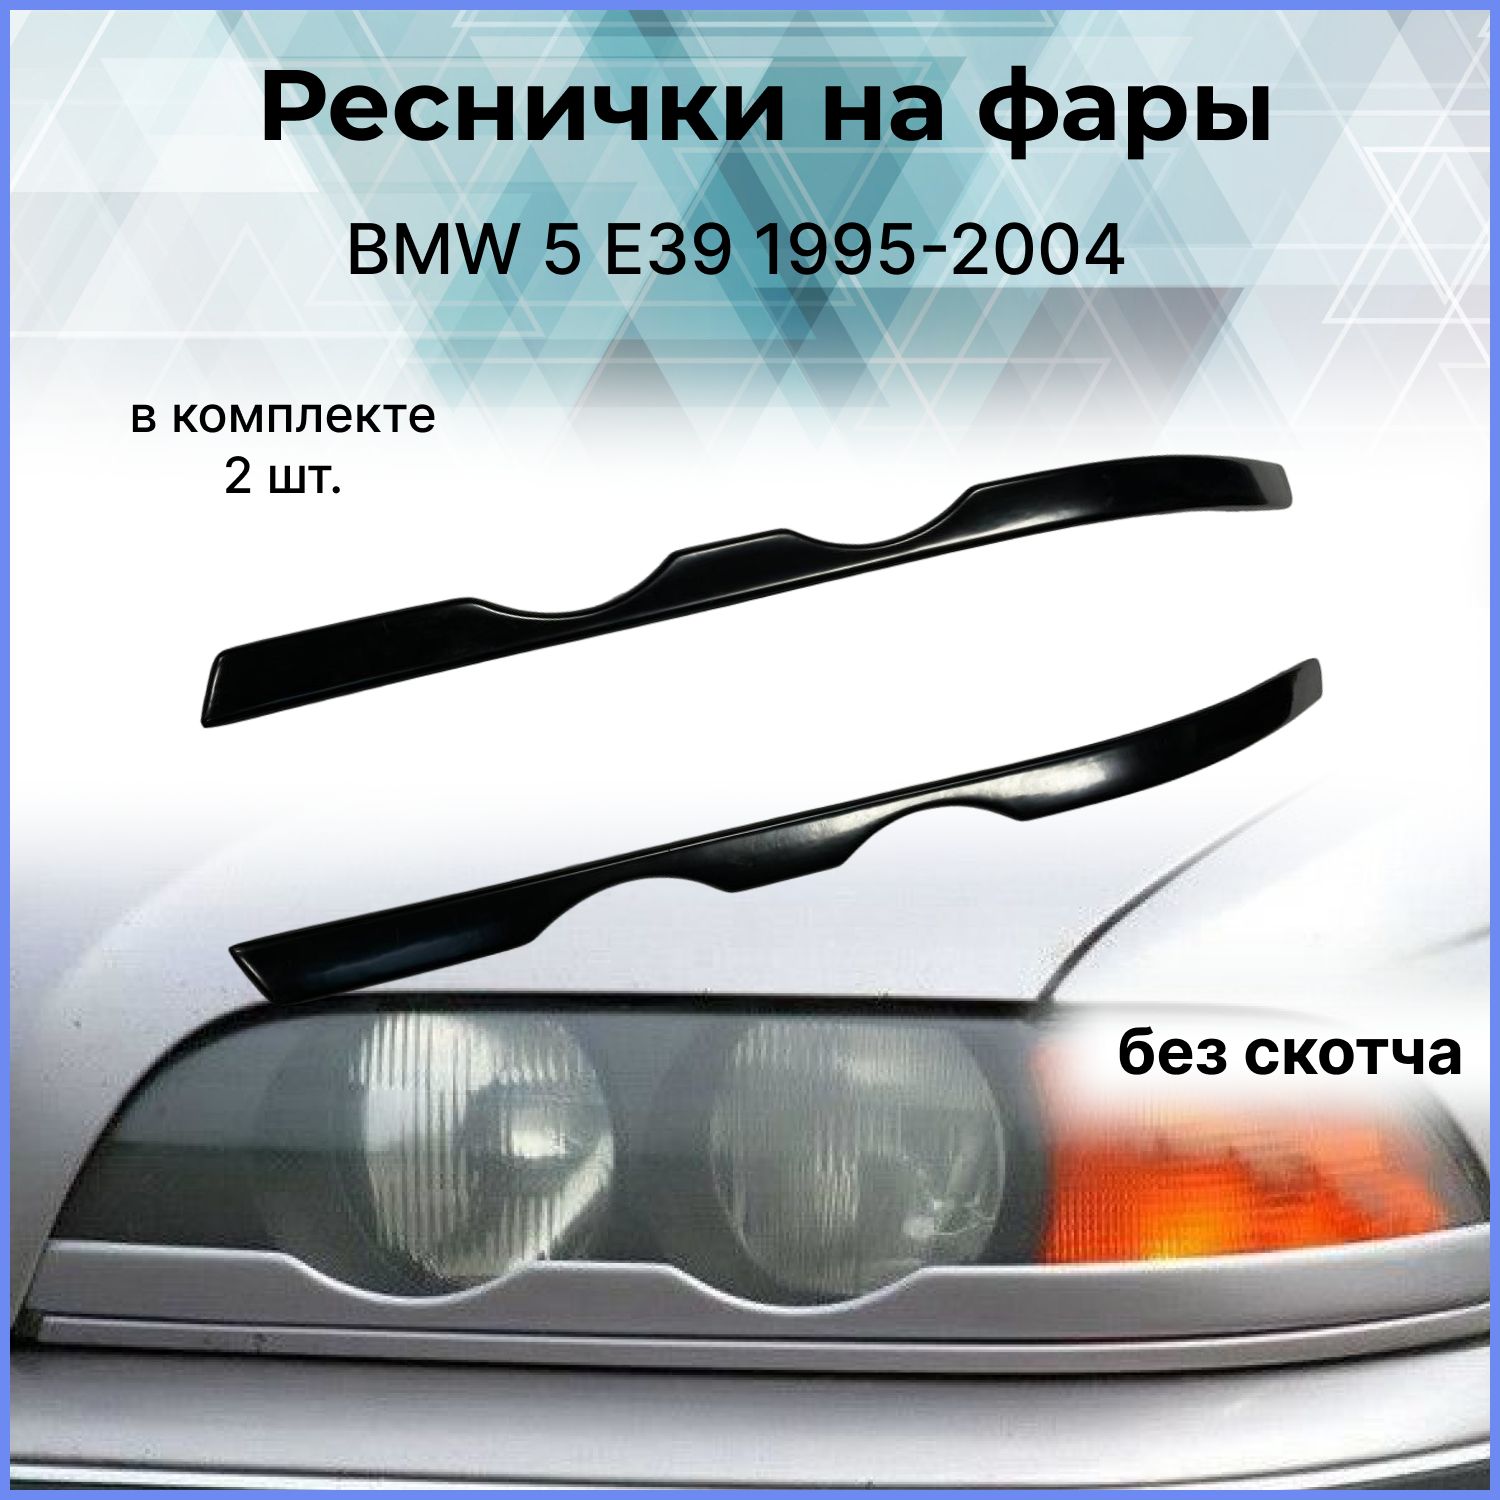 Реснички на фары - BMW E39